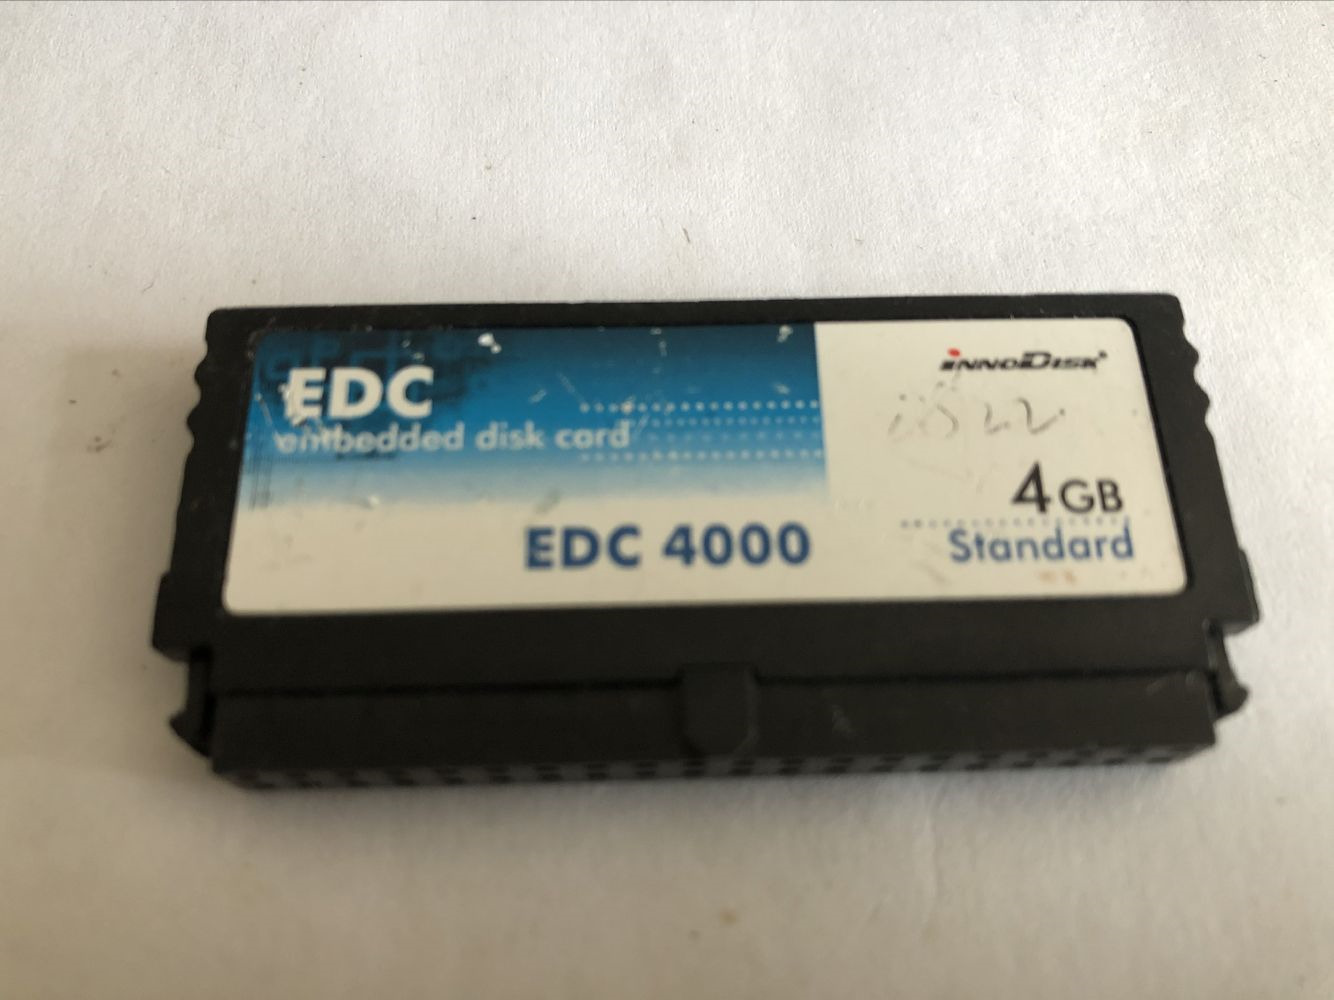 EDC 4GB embedded disk card iNNODISK EDC 4000 40pin DOM 4GB